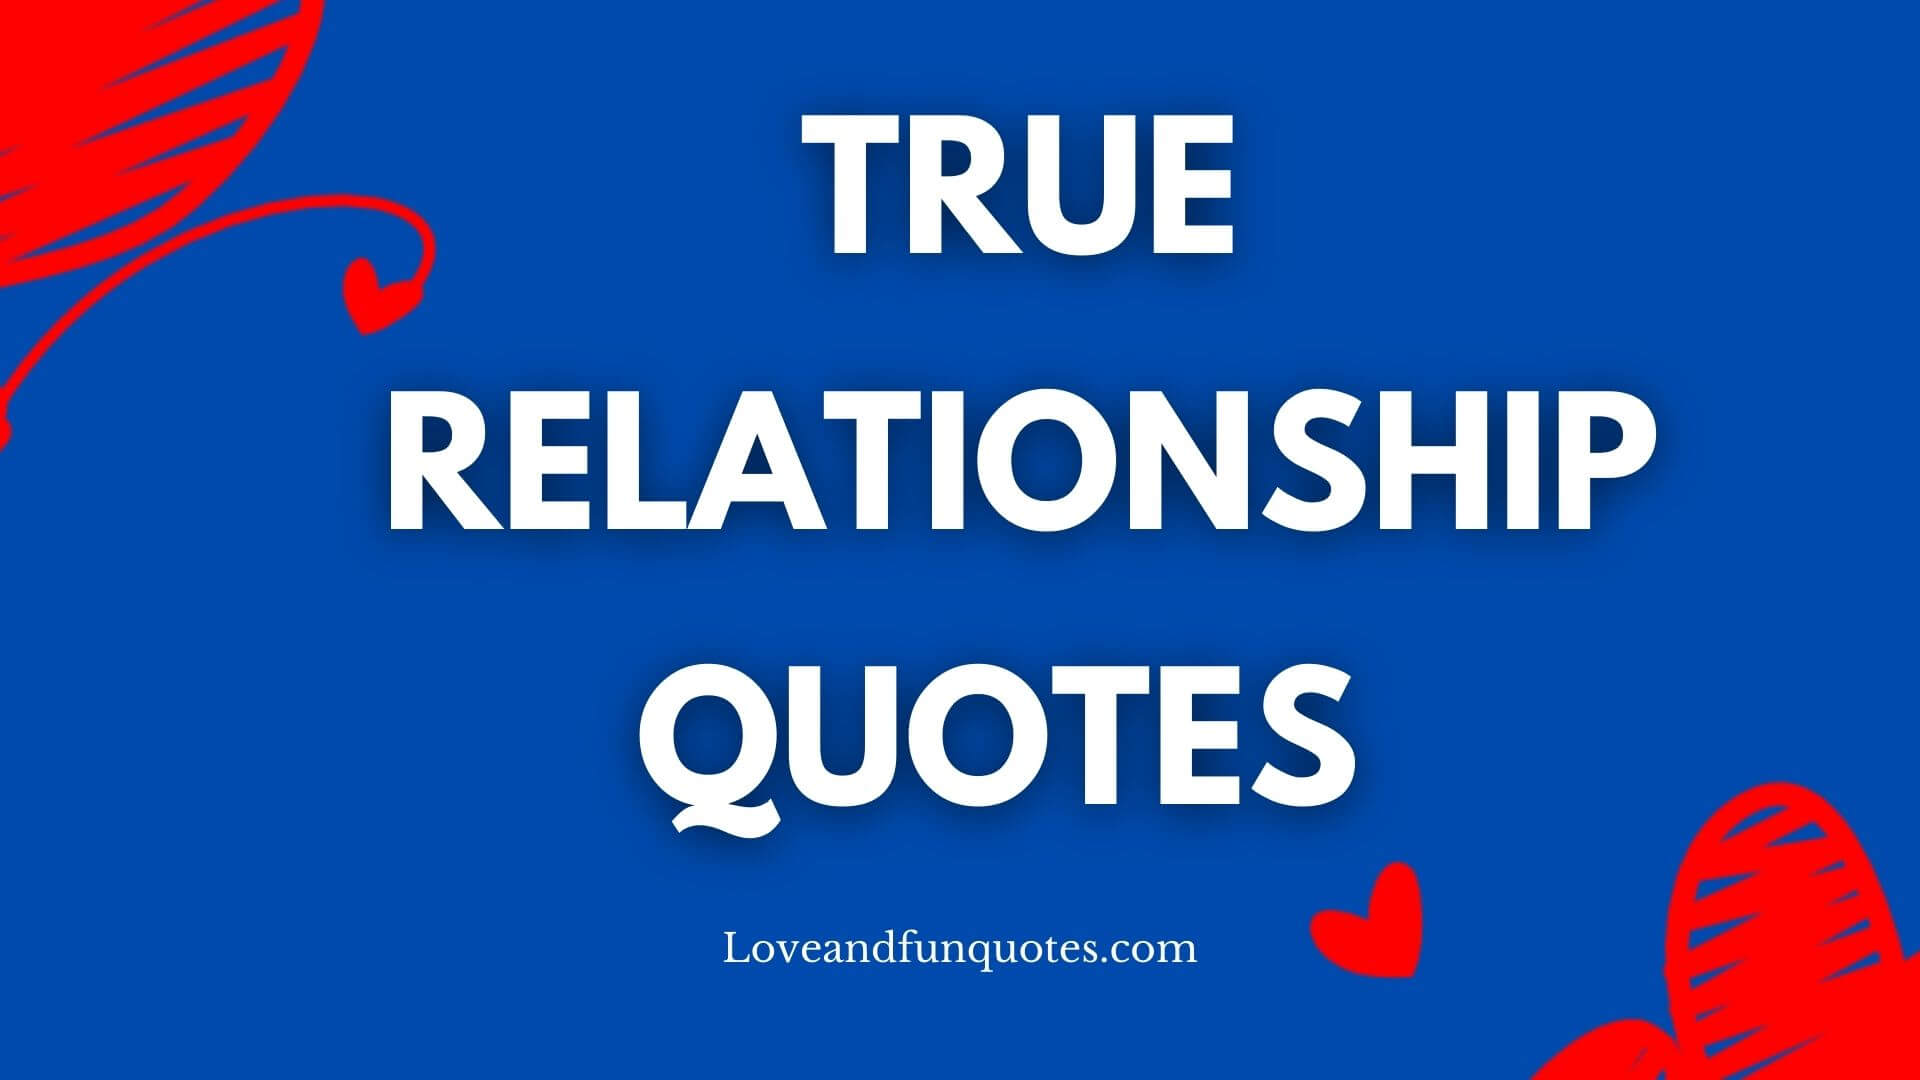 True Relationship quotes